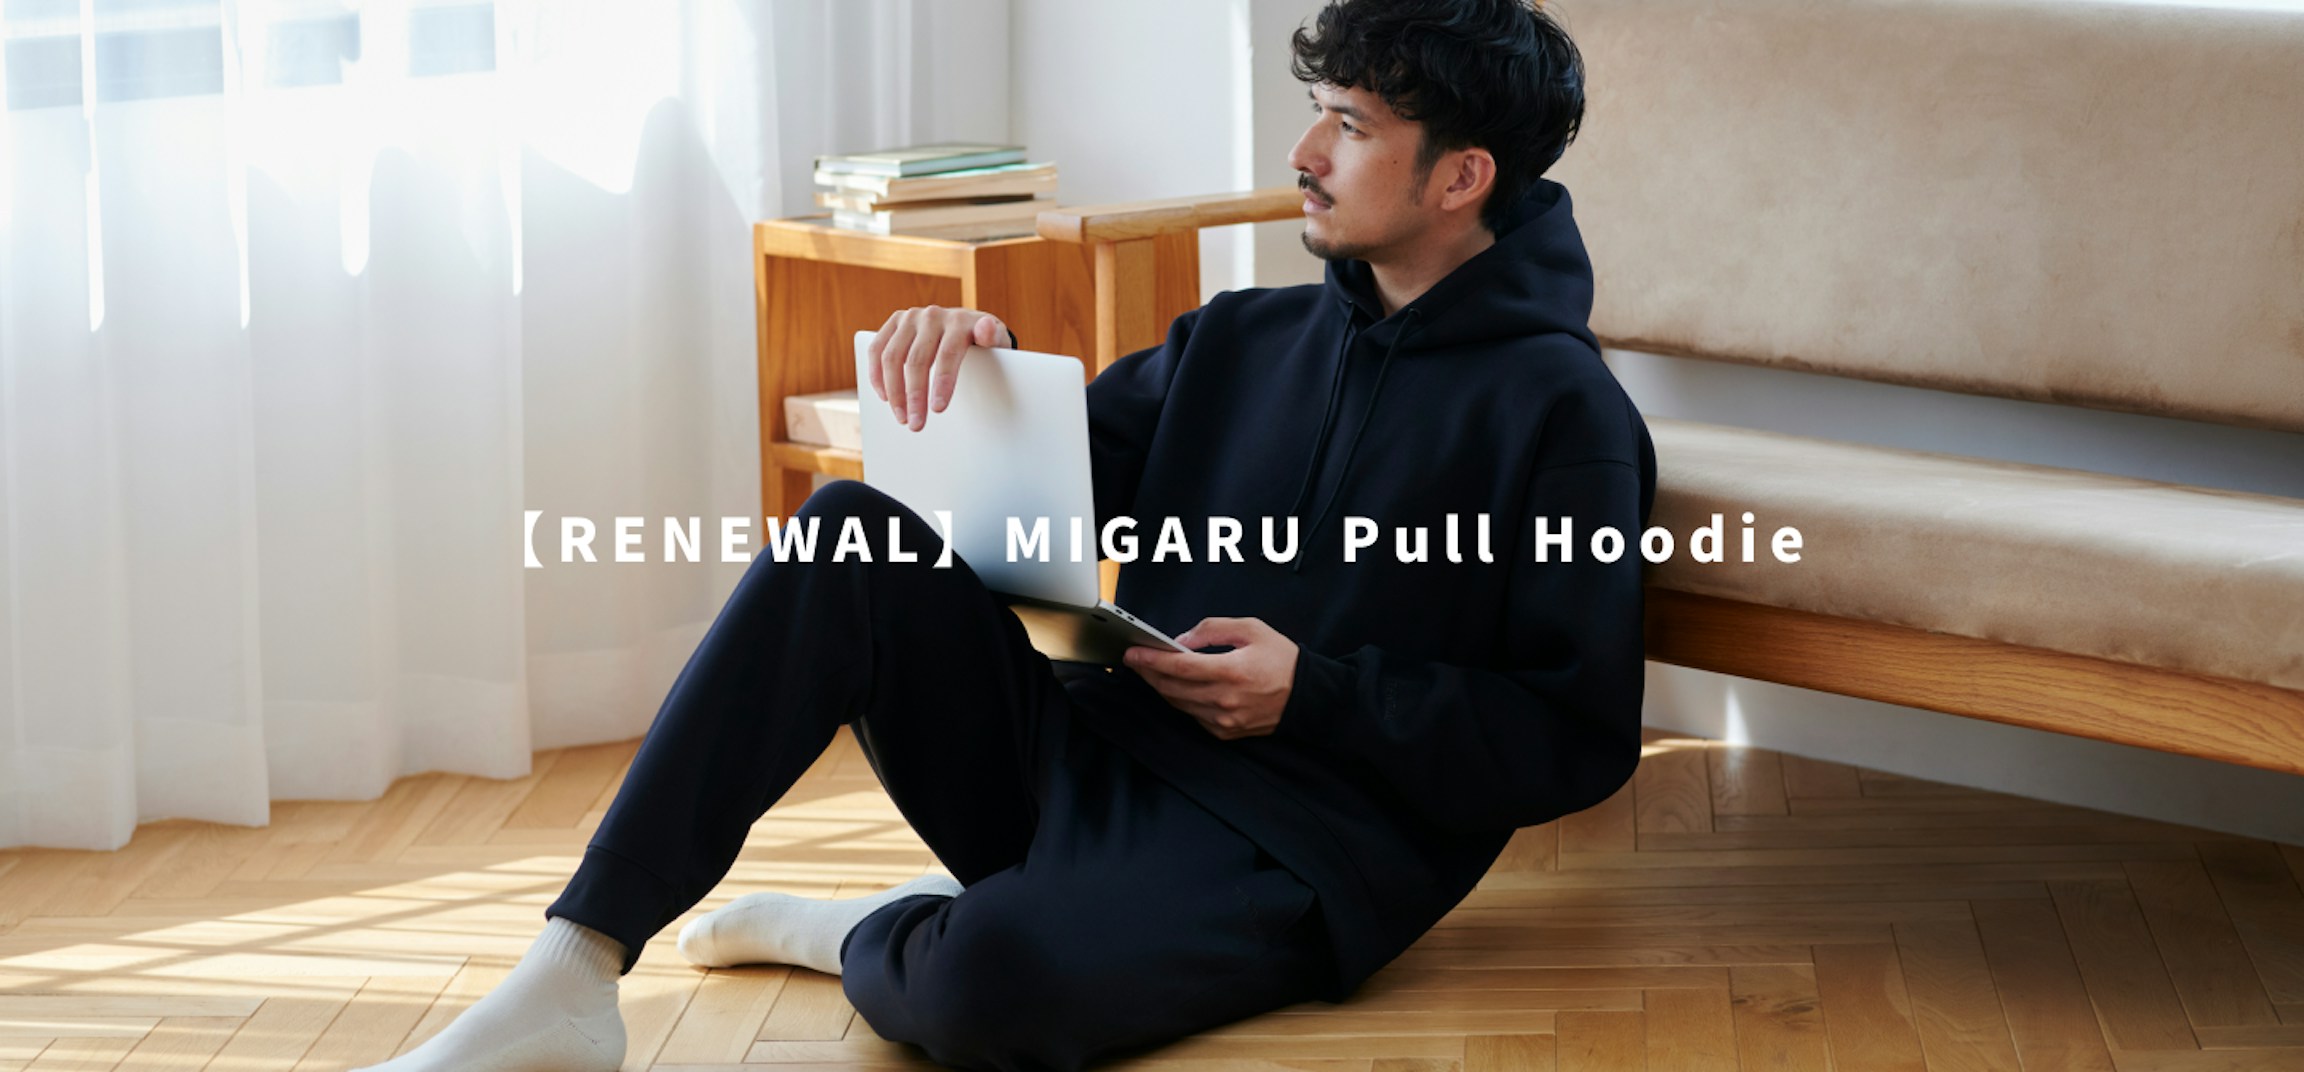 【RENEWAL】MIGARU /Pull hoodie